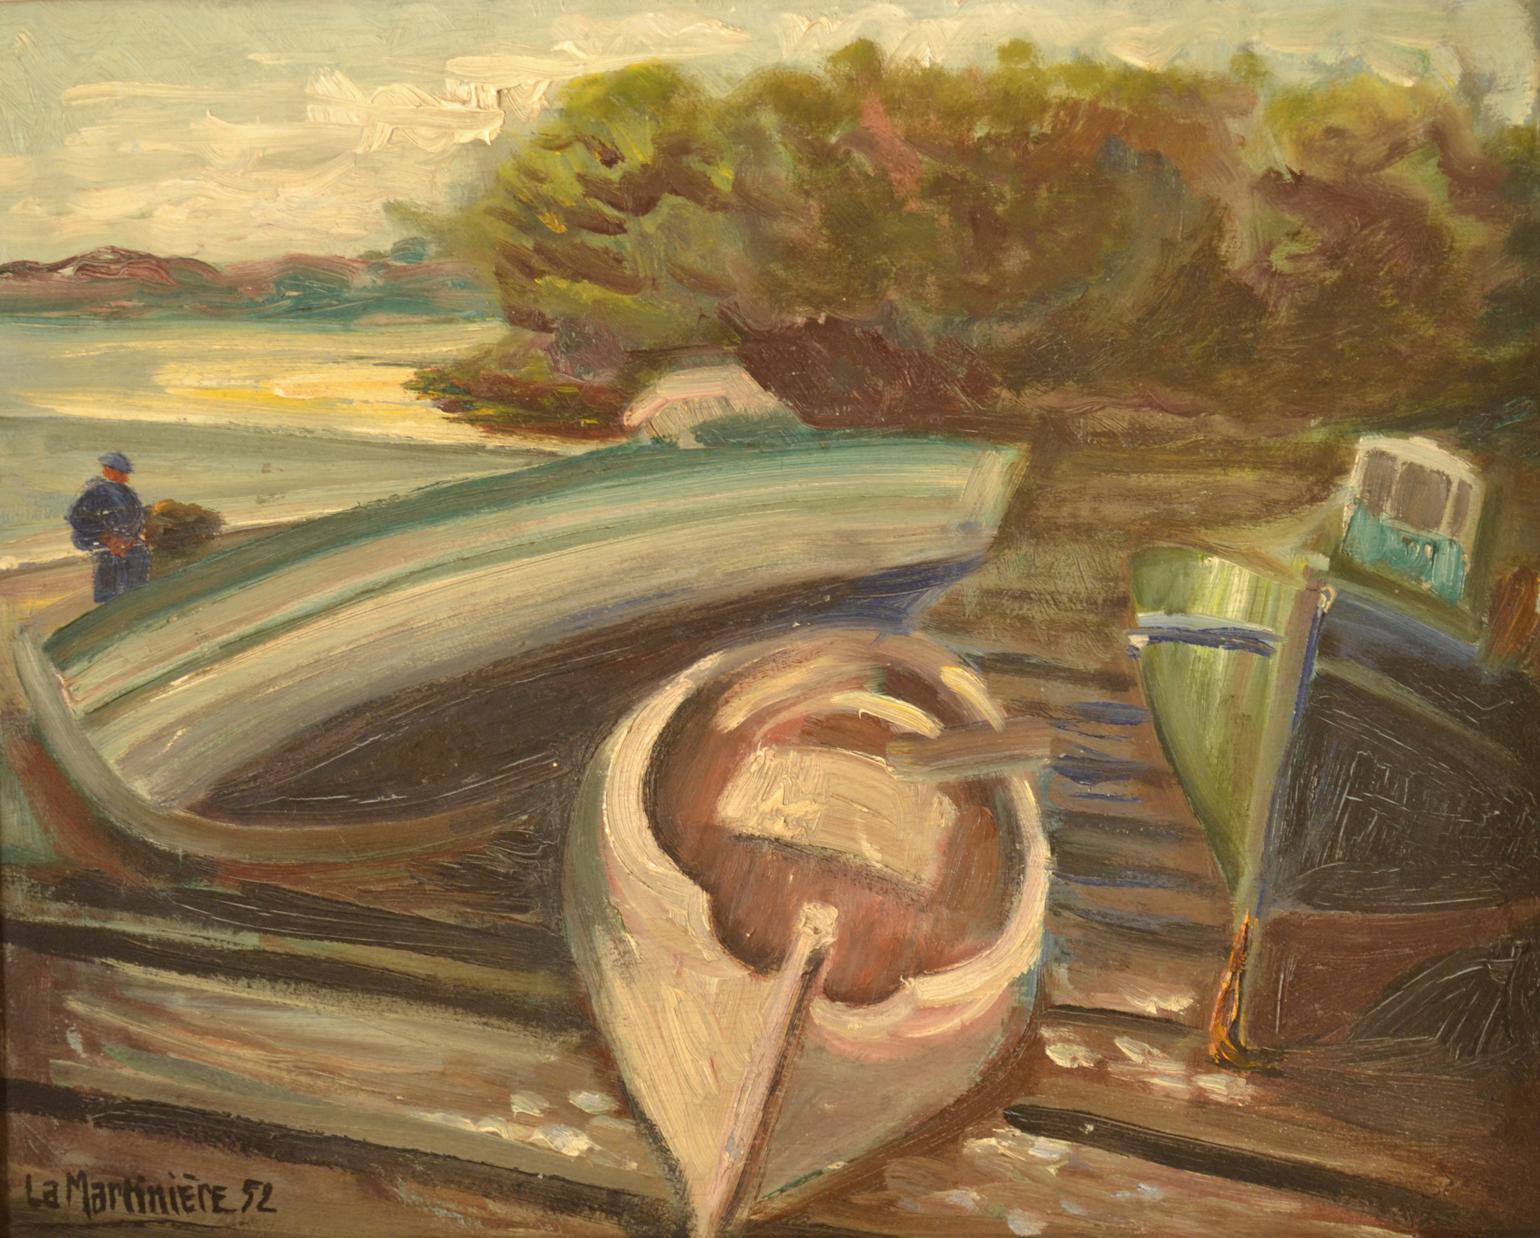 Expressive Ölgemälde auf Holzplatte Französisch von La Martiniere im Jahr 1952. Das Gemälde stellt Fischer und ihre Boote dar.
Das Gemälde ohne Rahmen misst 41 x 33 cm und befindet sich in seinem Originalrahmen.
 
    